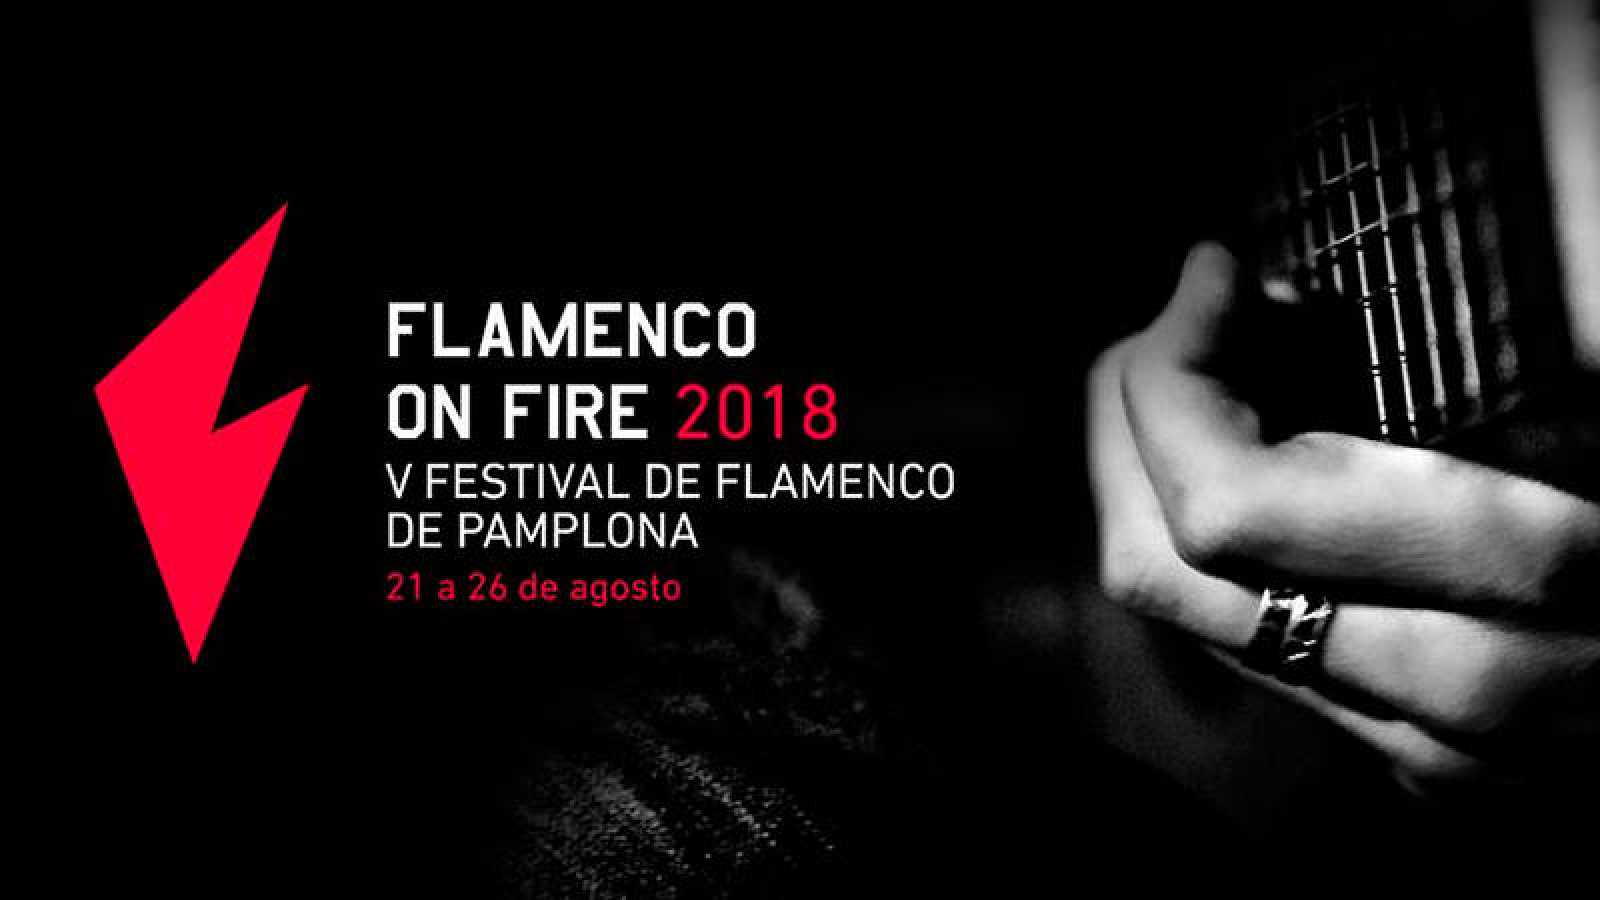 Resultado de imagen de LOGO FLAMENCO ON FIRE 2018 fotos